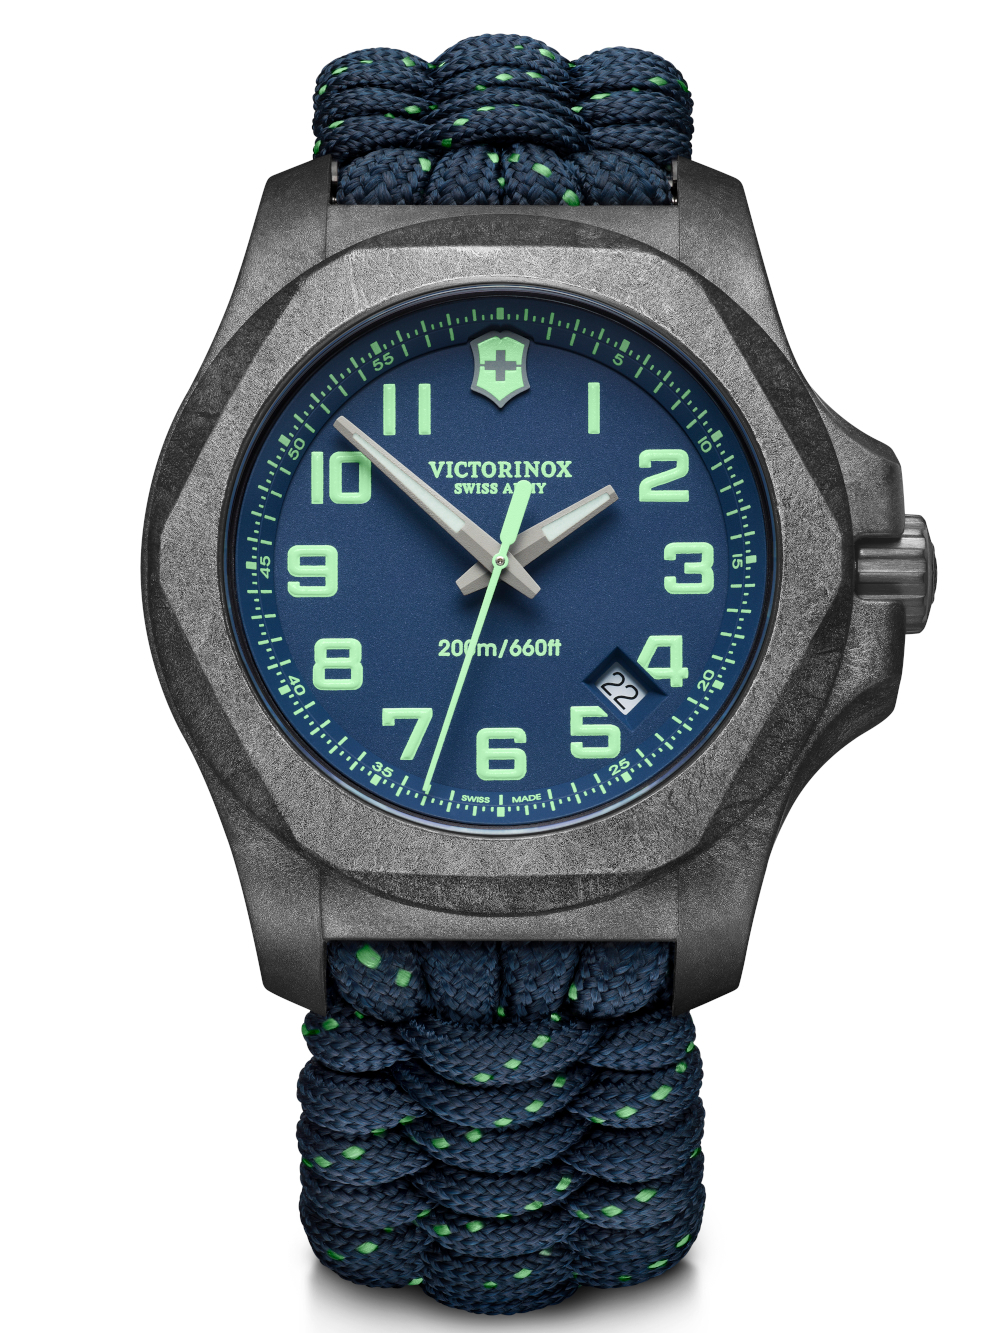 Pánské hodinky Victorinox 241860 I.N.O.X. Carbon set s náhradním řemínkem